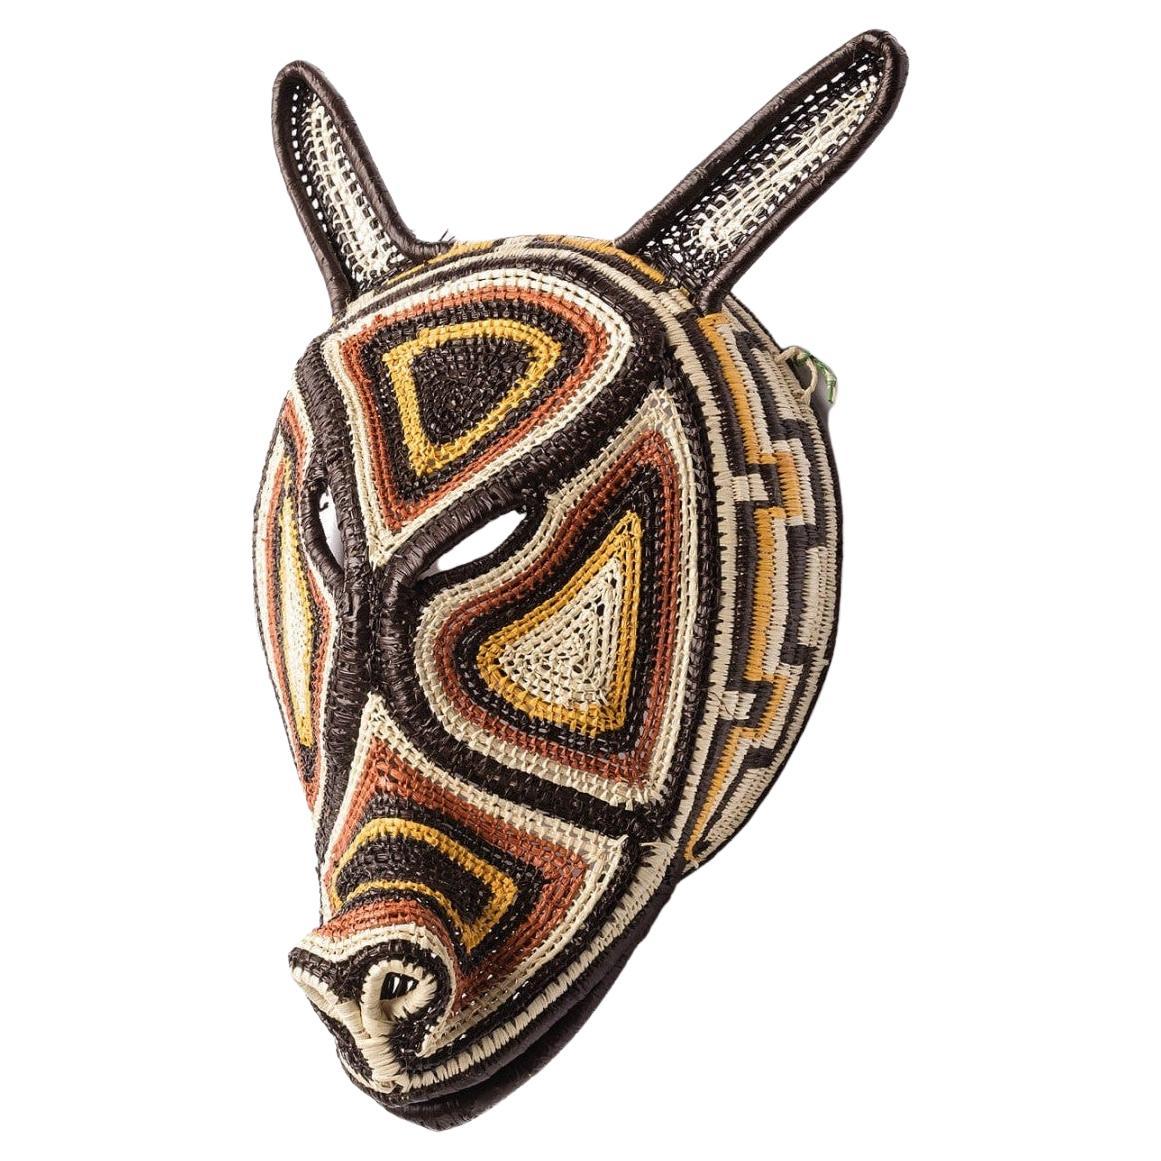 Masque décoratif tissé à la main du Panama, Nemboro, par Ethic&Tropic